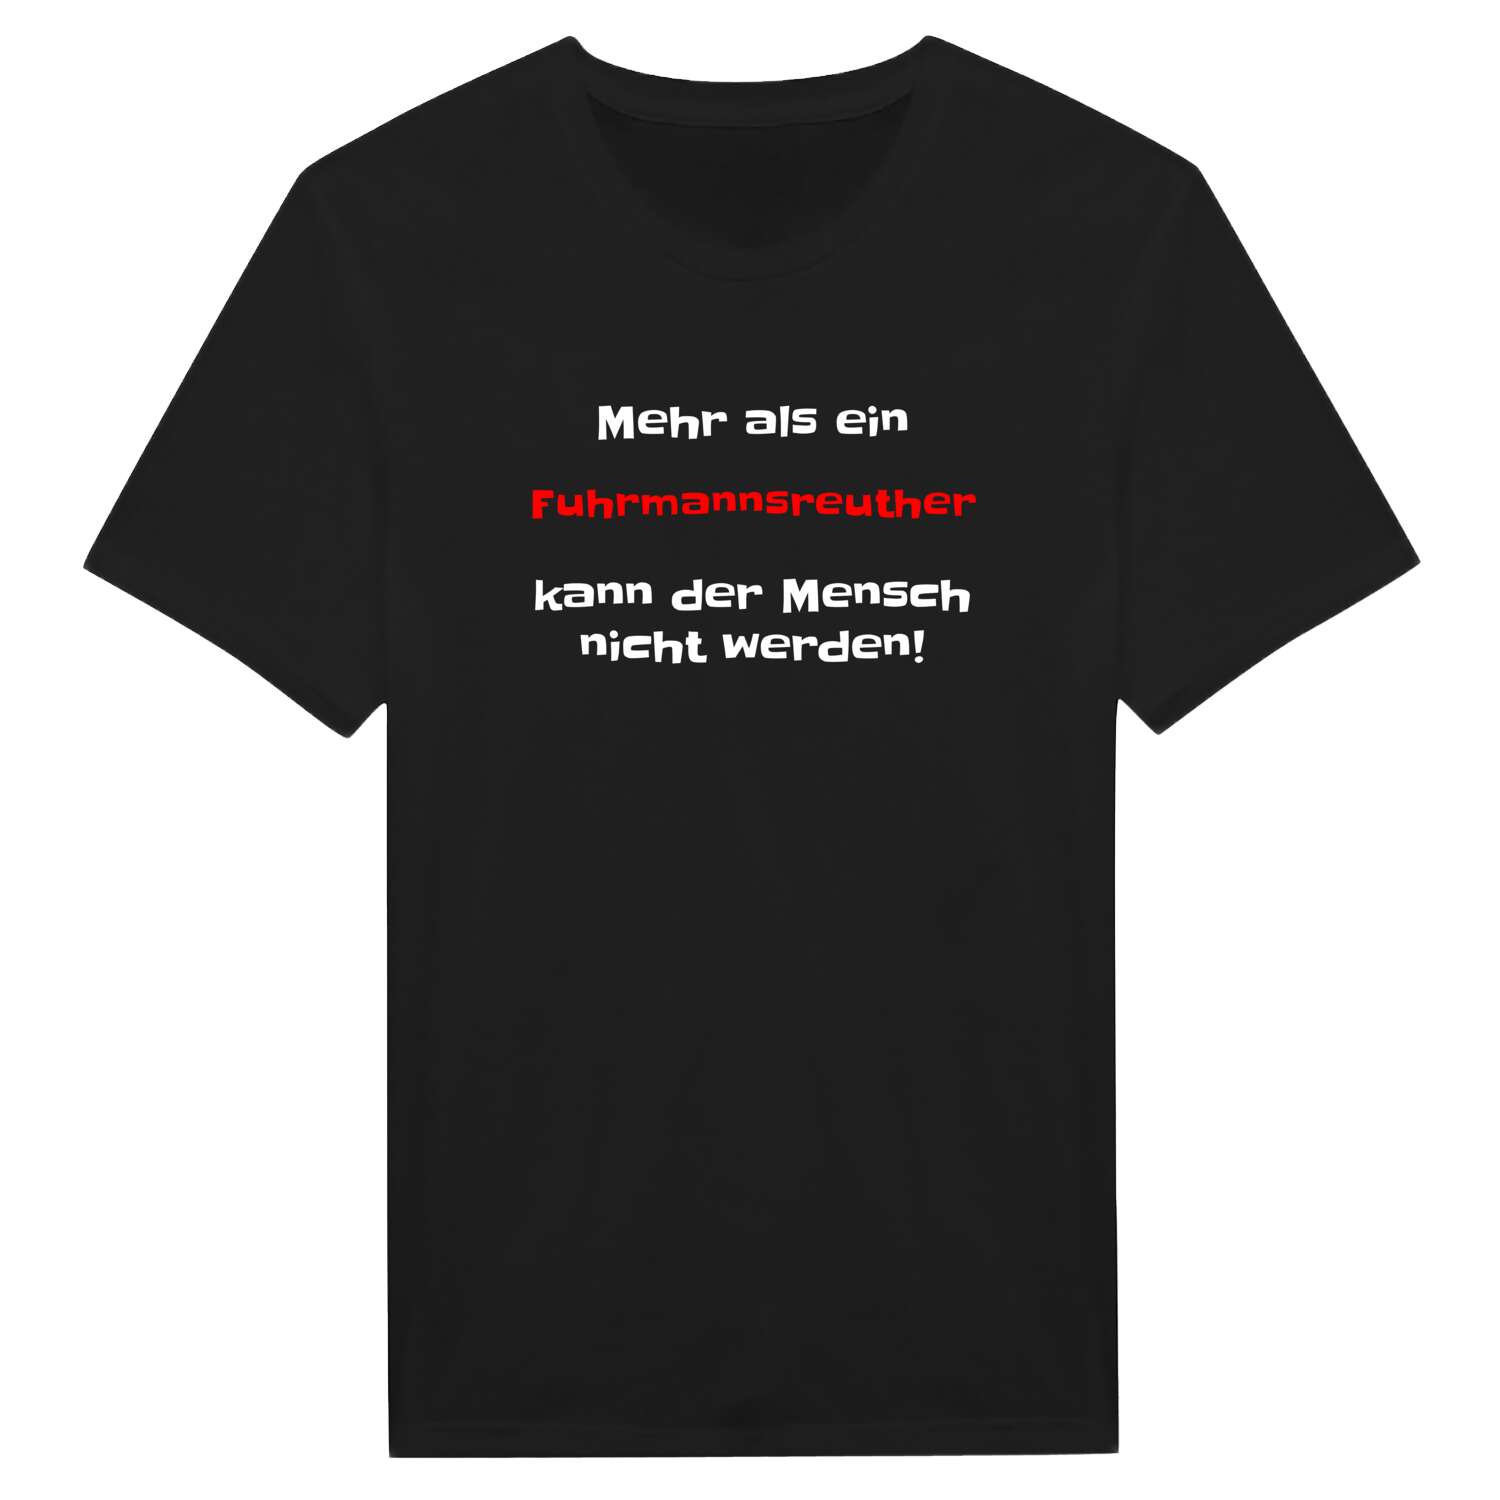 Fuhrmannsreuth T-Shirt »Mehr als ein«